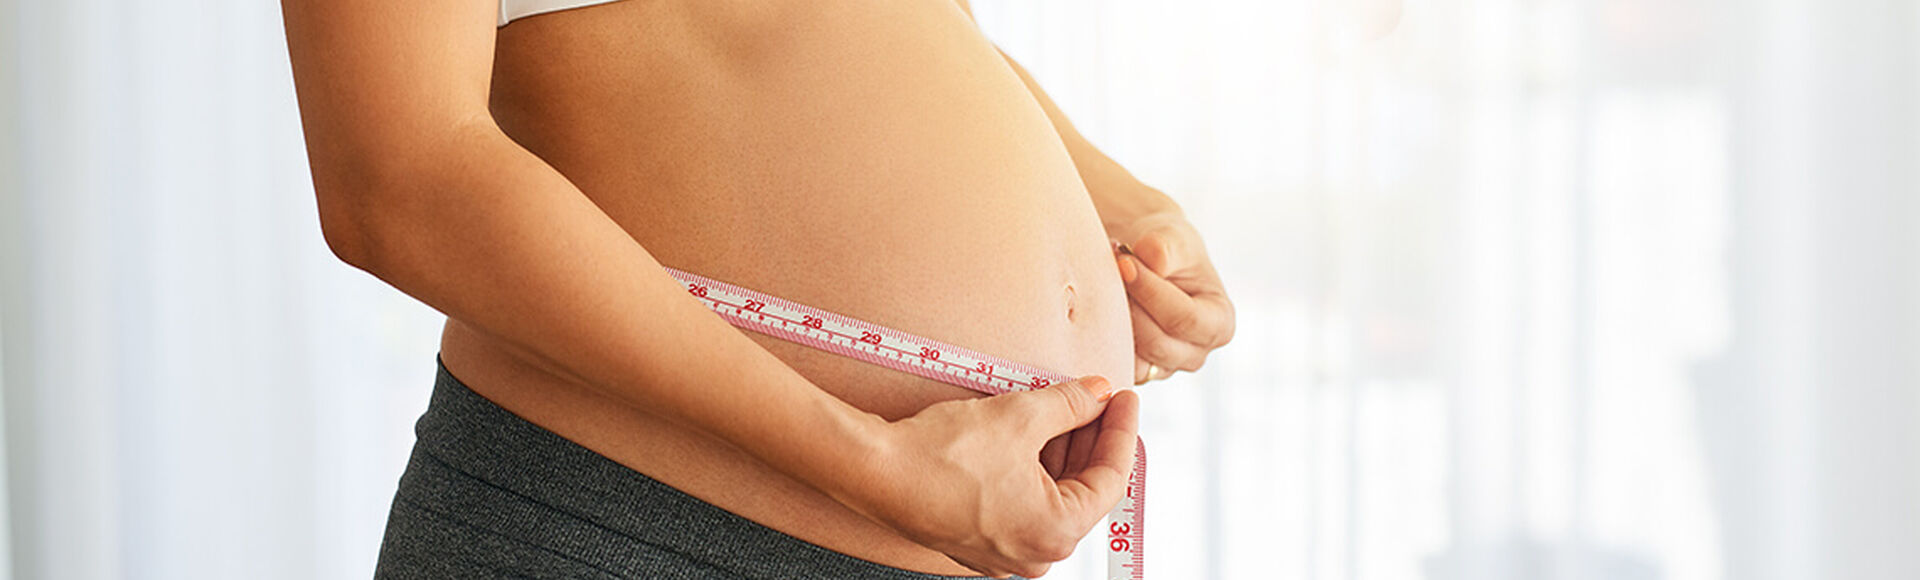 Dieta para embarazos múltiples | Más Abrazos by Huggies